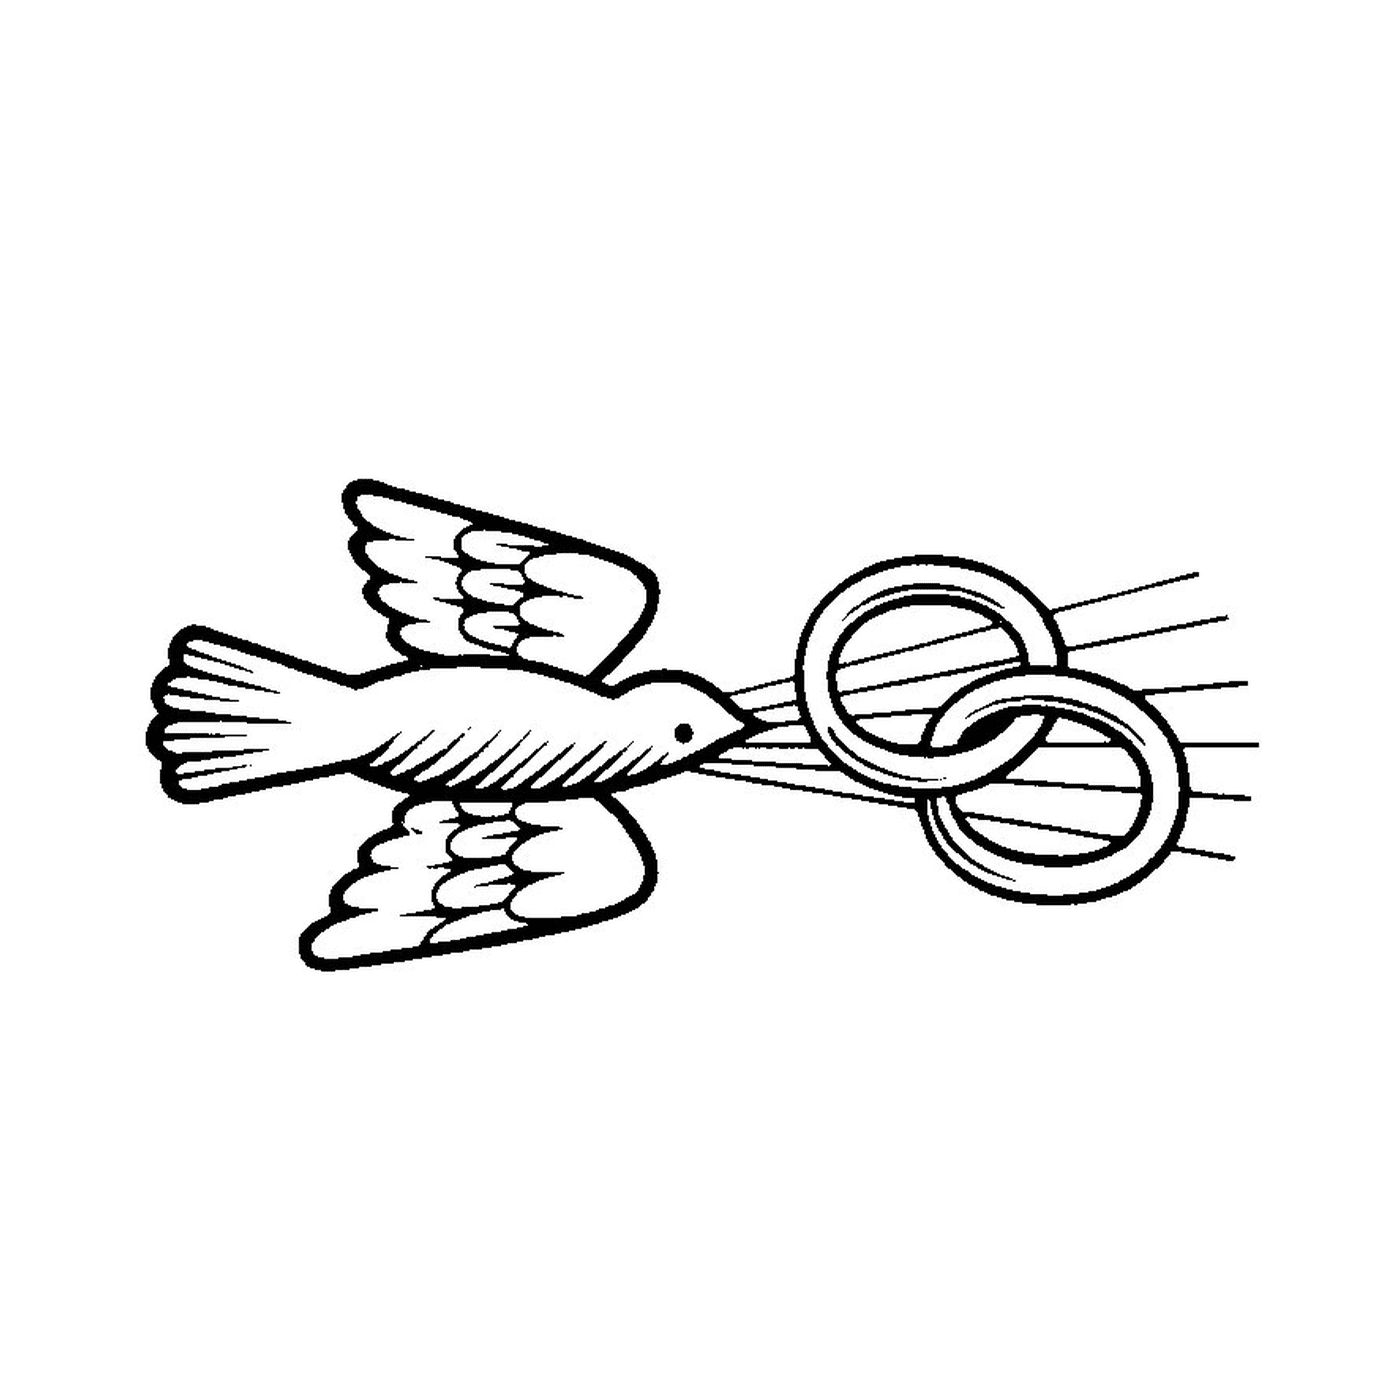   Oiseau volant à travers une paire de ciseaux 